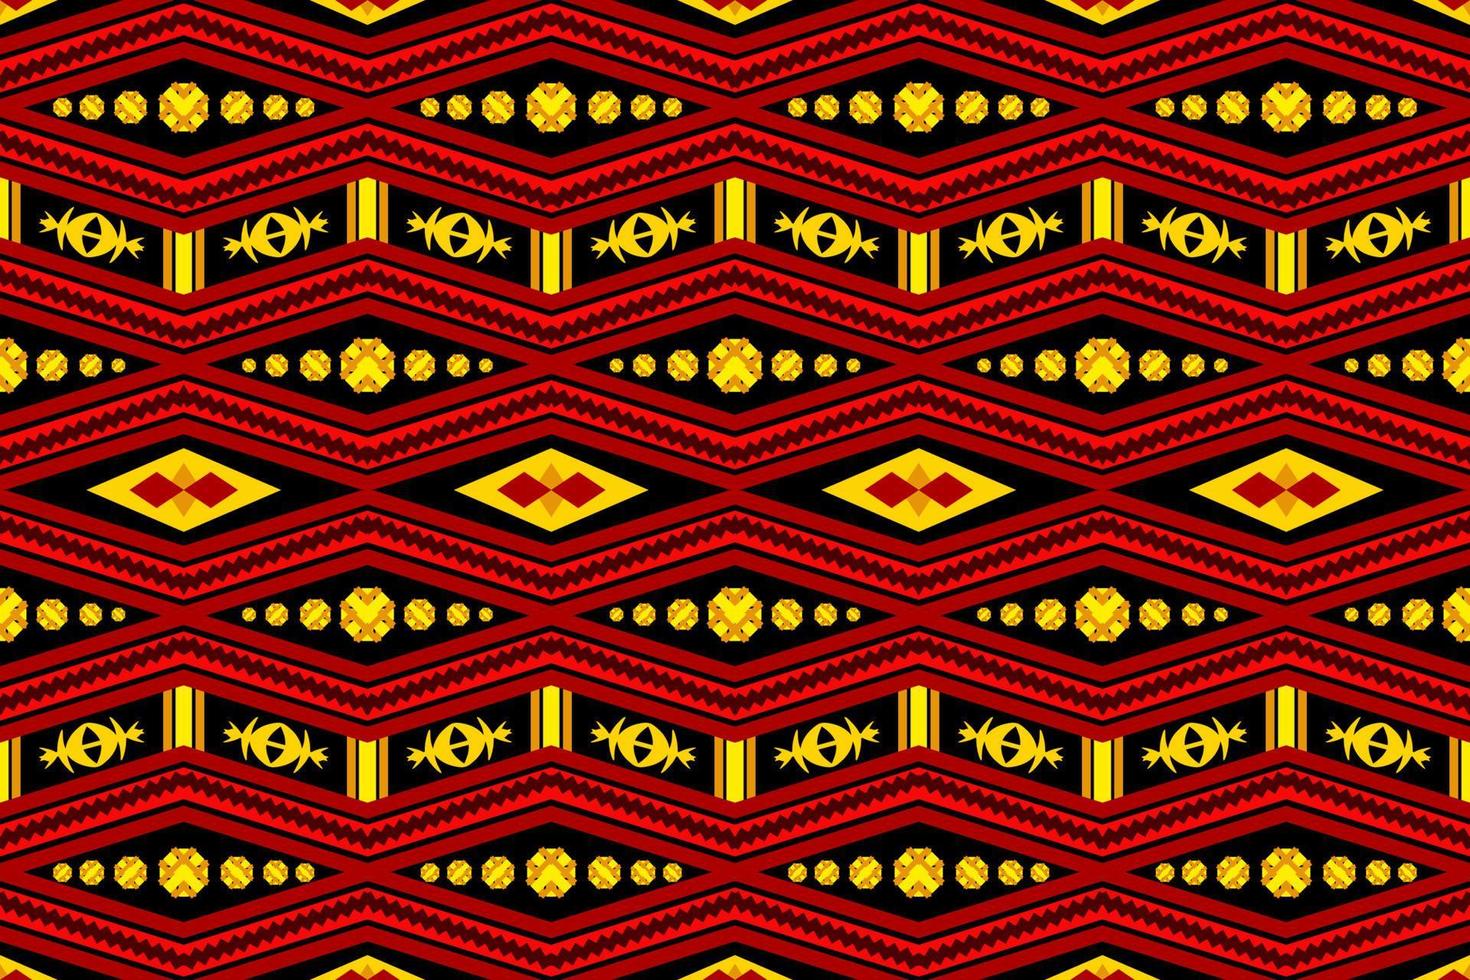 geometrico etnico orientale tradizionale pattern.figure ricamo tribale style.design per carta da parati, abbigliamento, avvolgimento, tessuto, illustrazione vettoriale. vettore